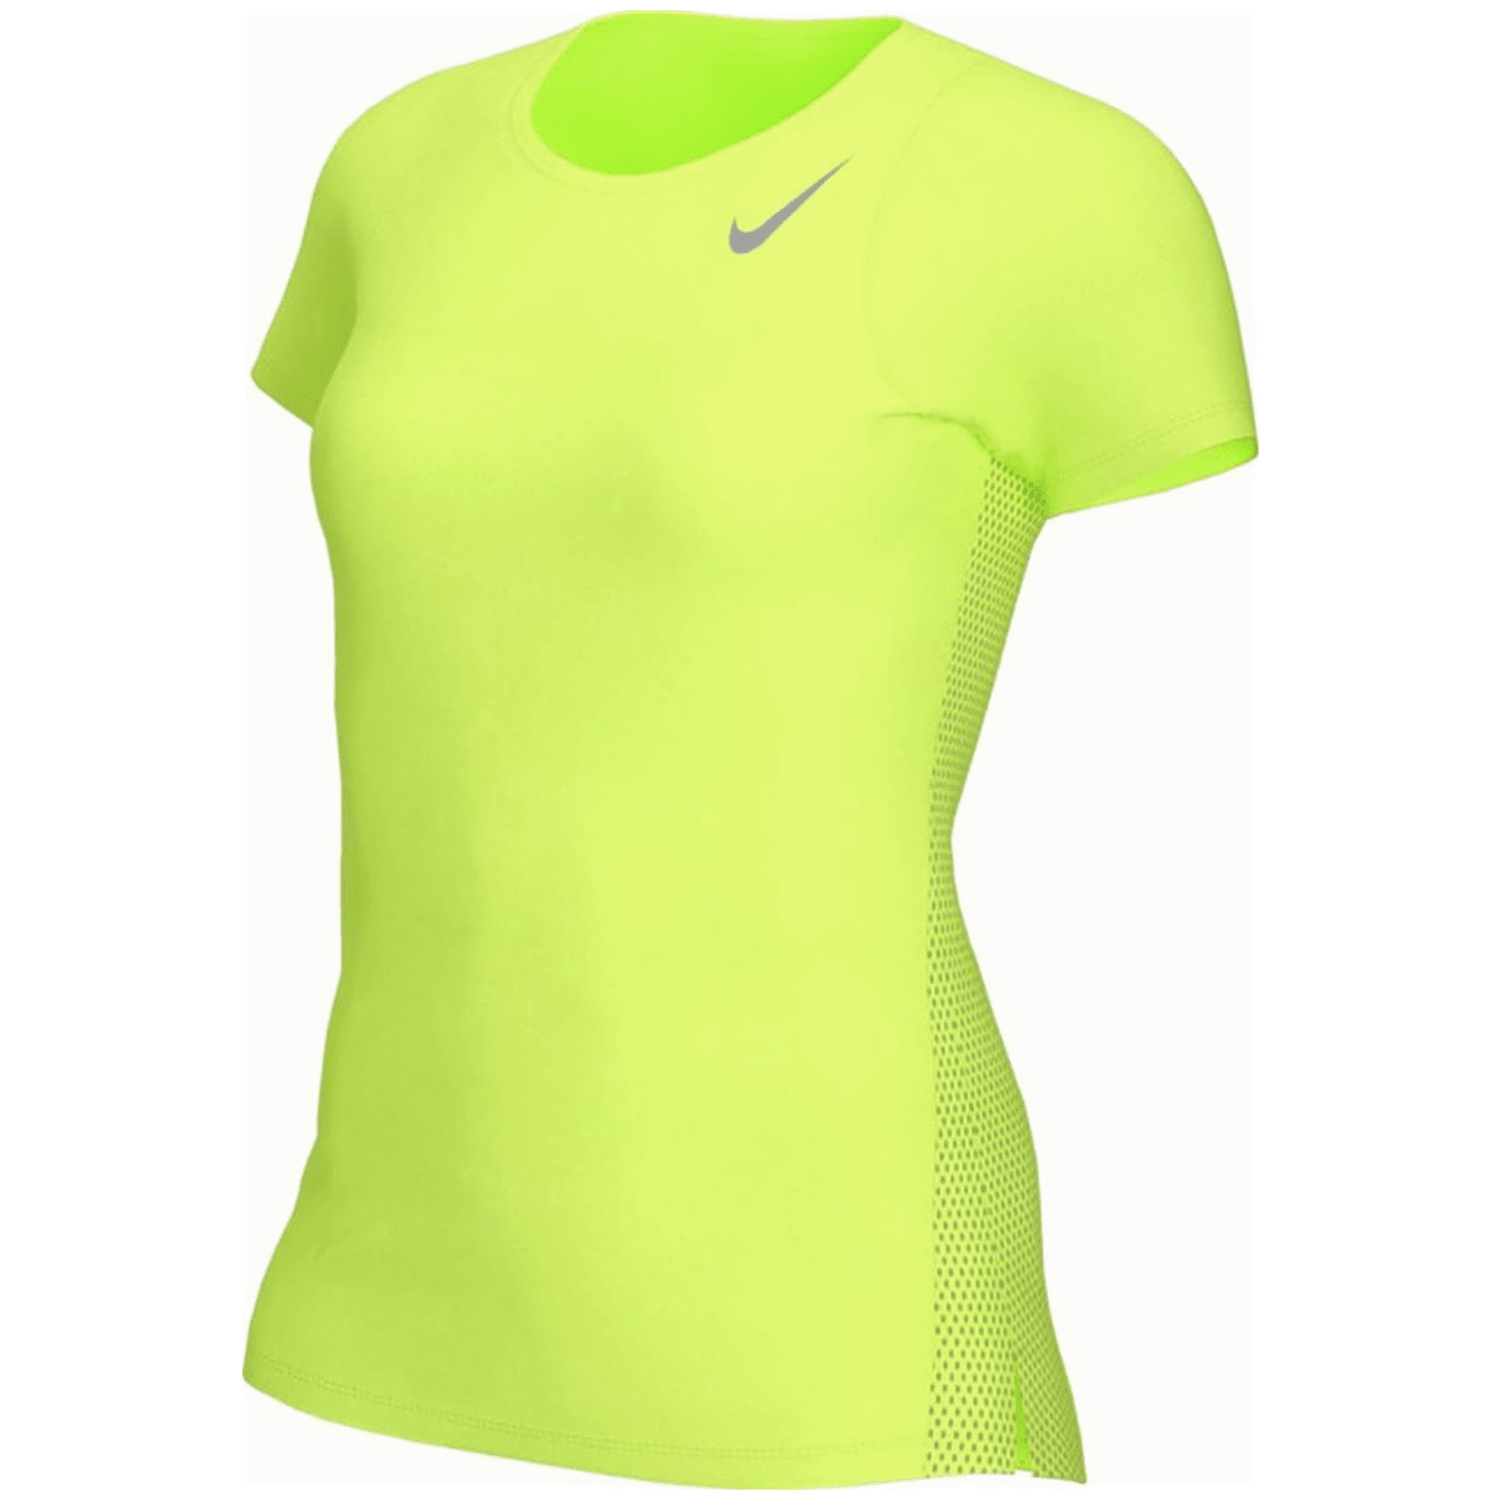 Nike Dri-FIT Race Top Damen T-Shirt